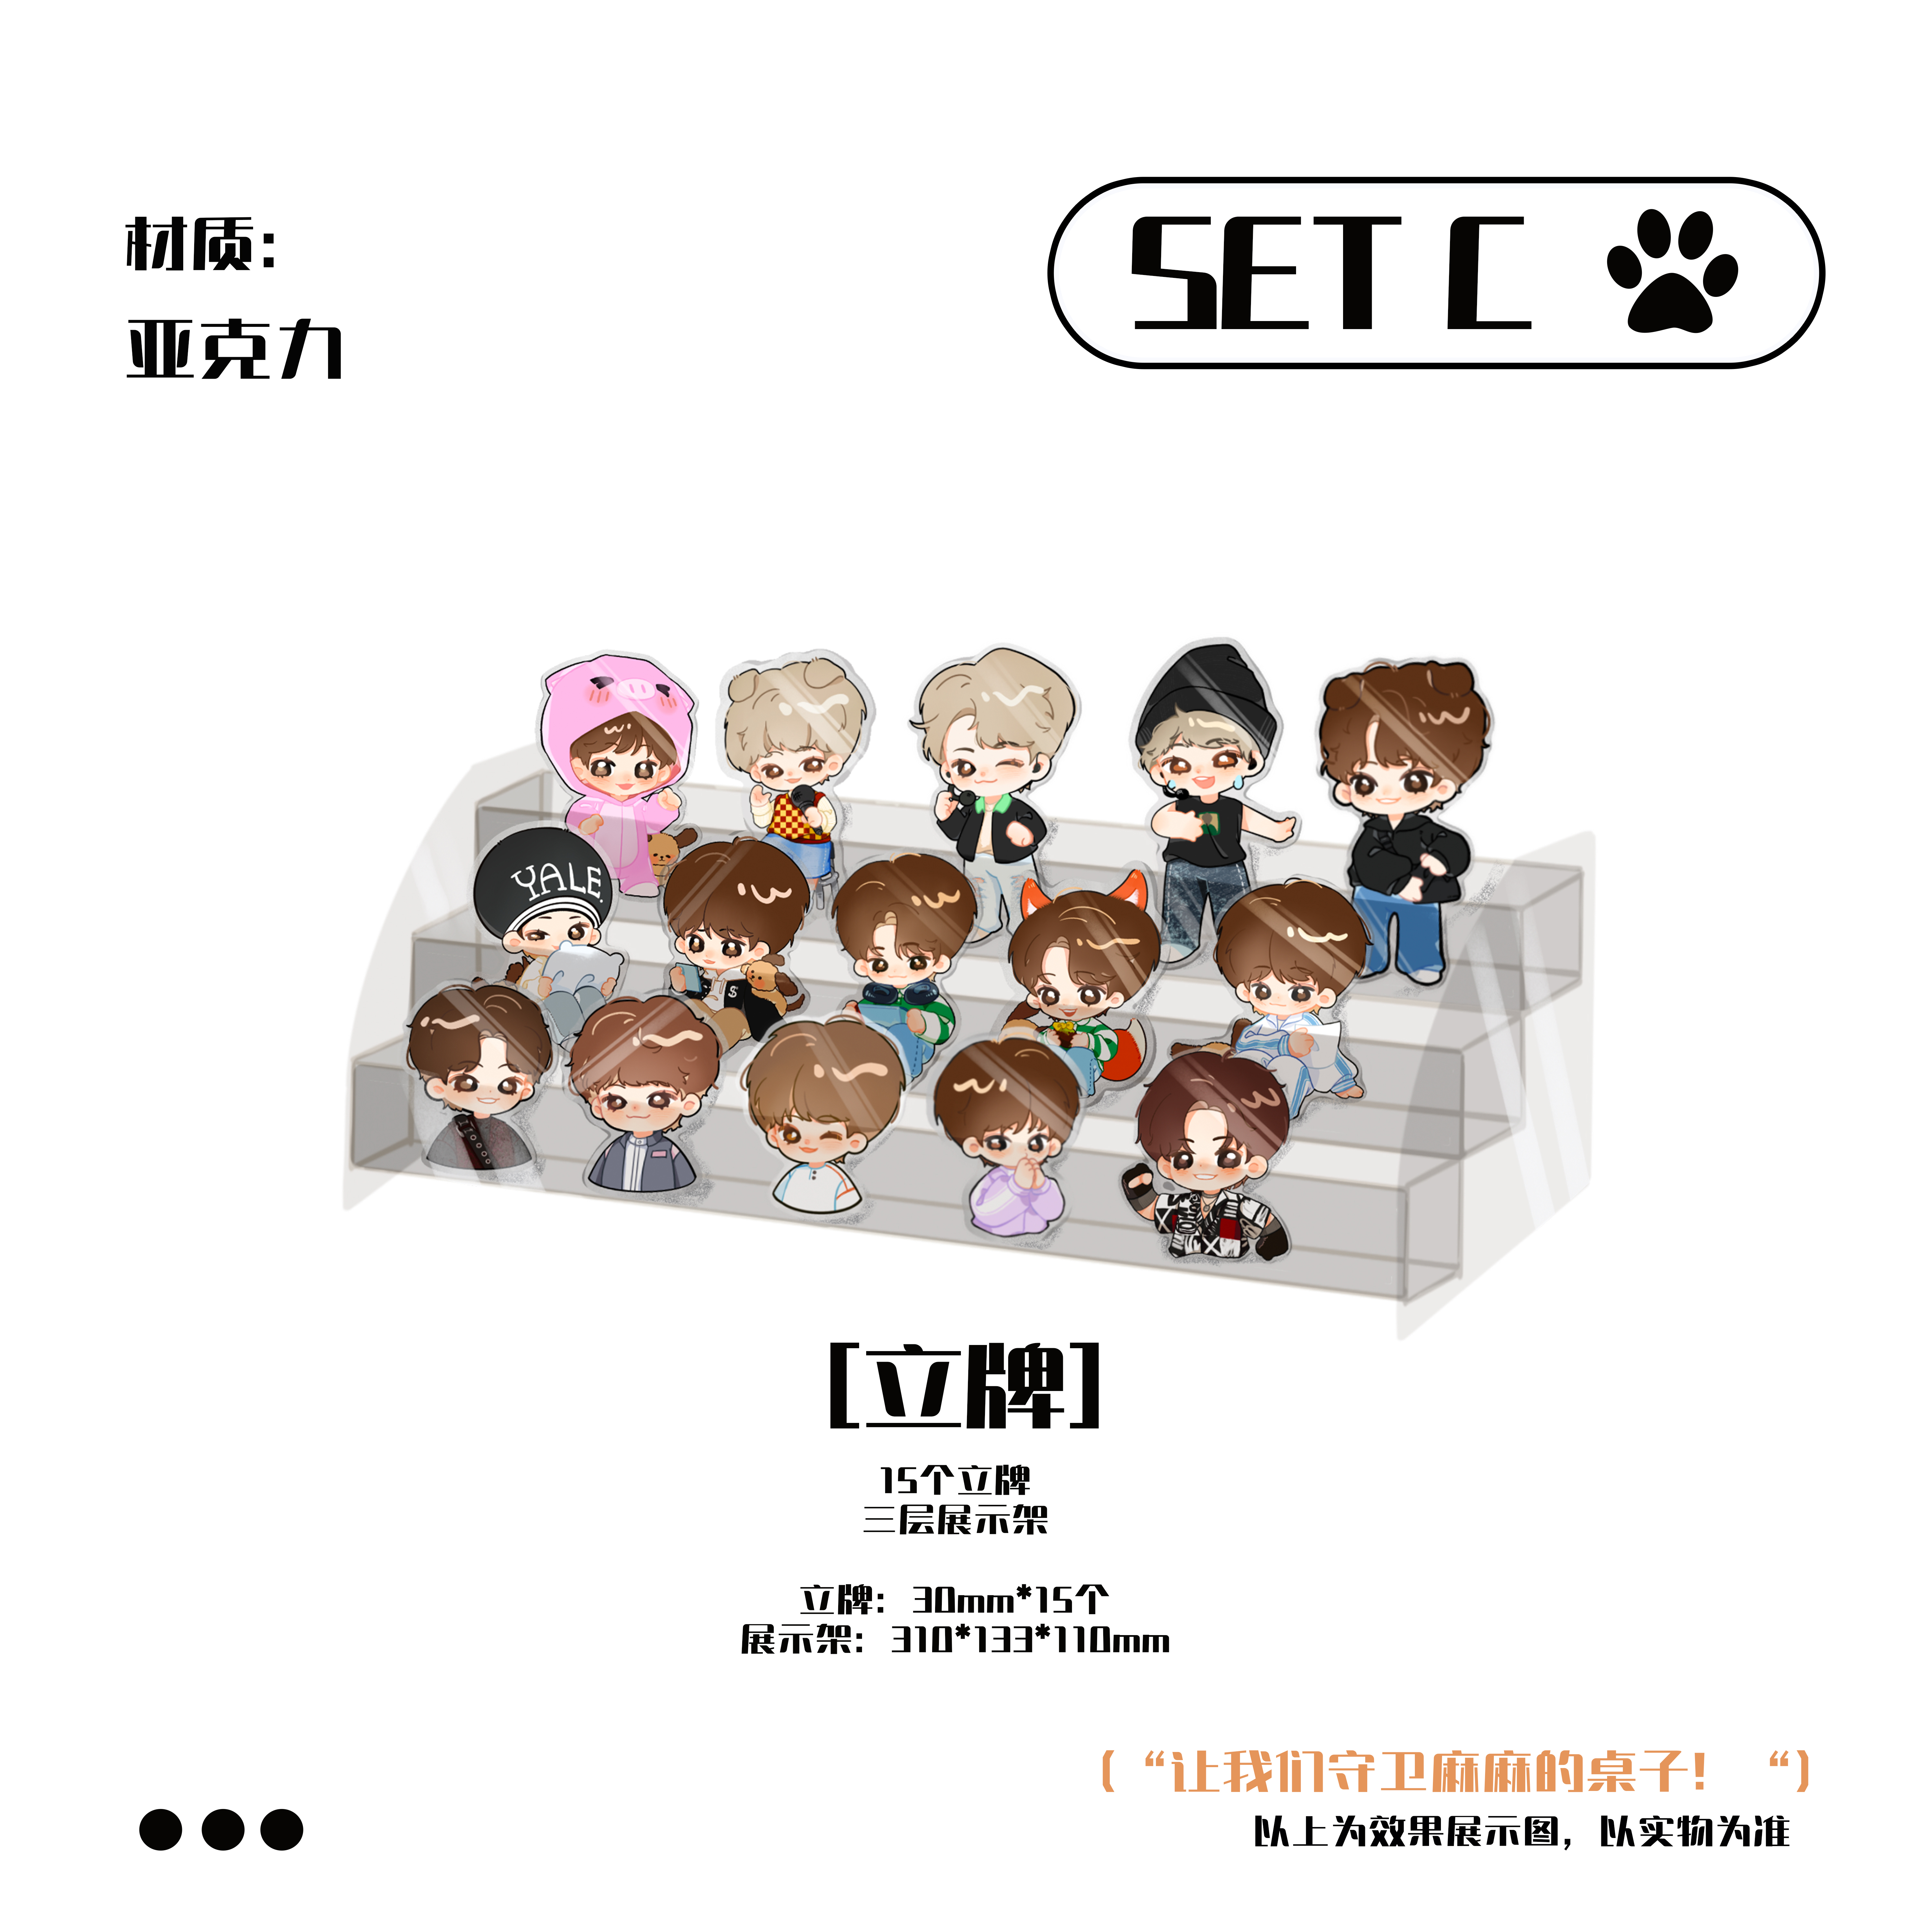 [全款 立牌 特典专] [Ktown4u Special Gift] LE'V - 1st EP Album [A.I.BAE] (POCAALBUM)_染色体家族站联合